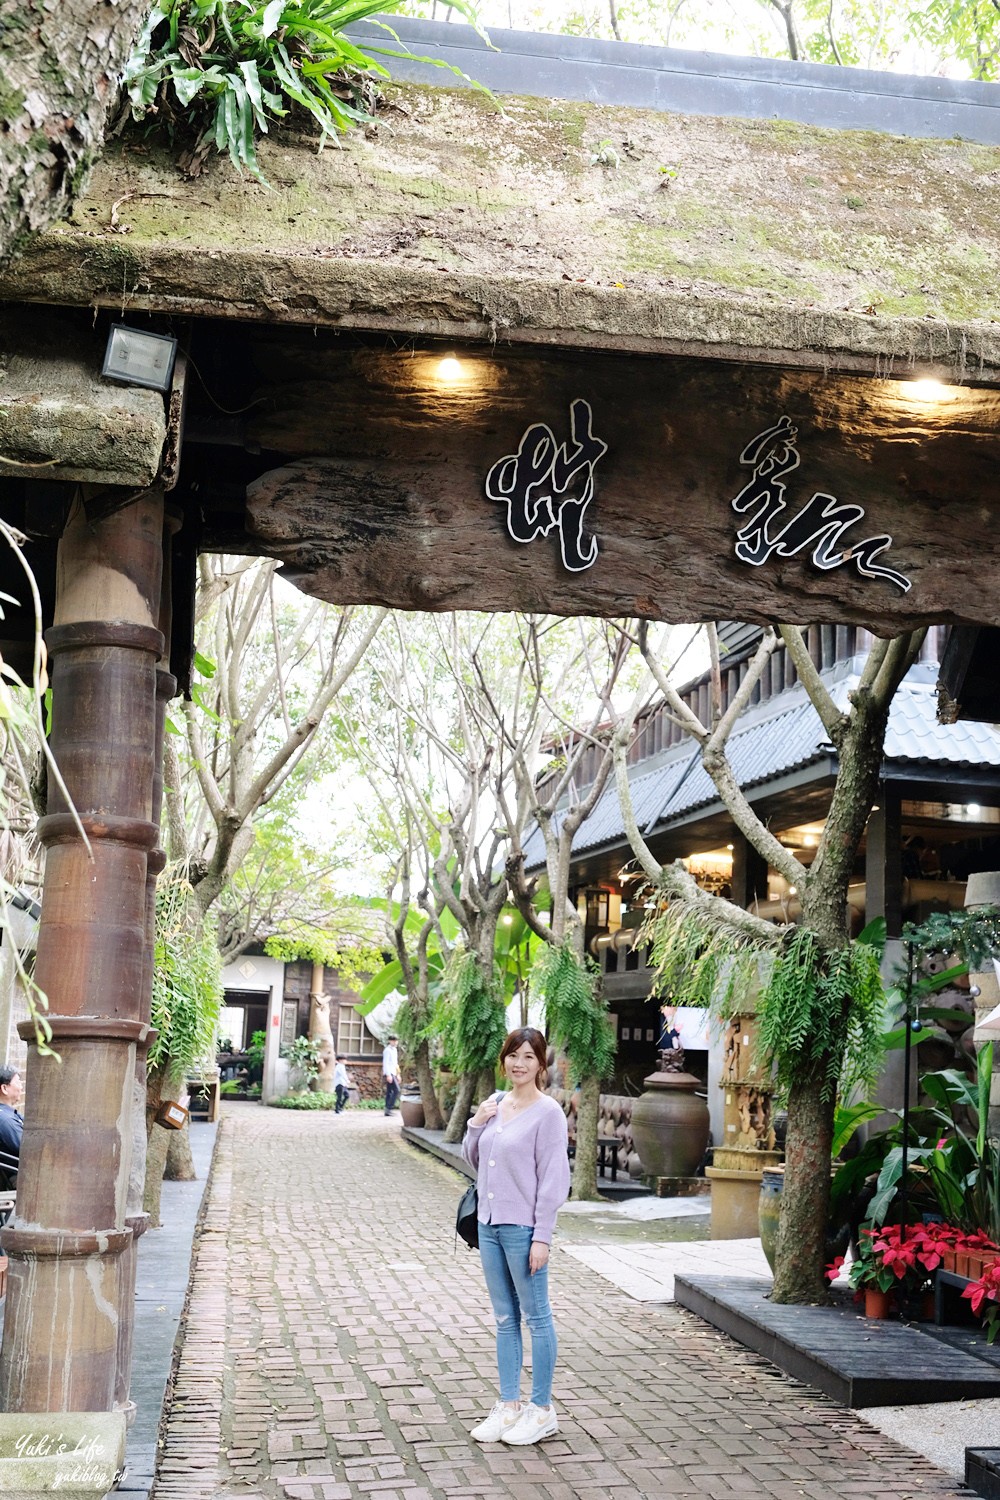 南投景點|水里蛇窯陶藝文化園區|一日遊玩手拉坯DIY,日式風情超好拍 - yukiblog.tw